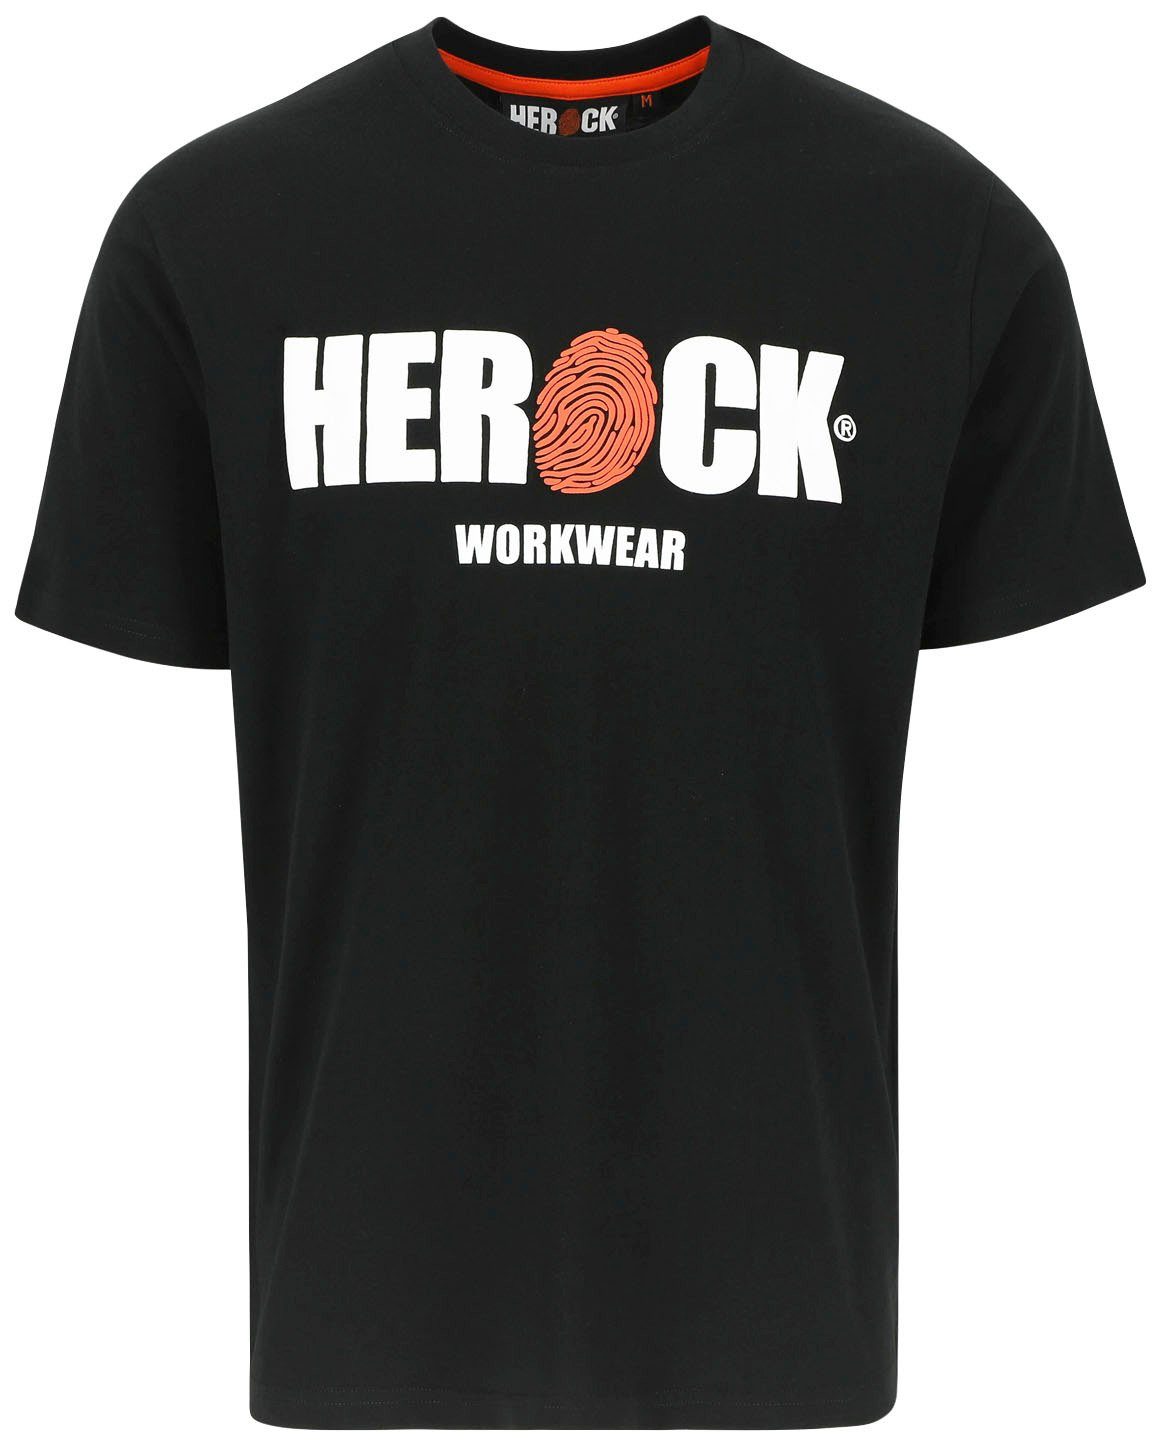 Herock T-Shirt ENI Baumwolle, Rundhals, mit Herock®-Aufdruck, angenehmes Tragegefühl schwarz | T-Shirts